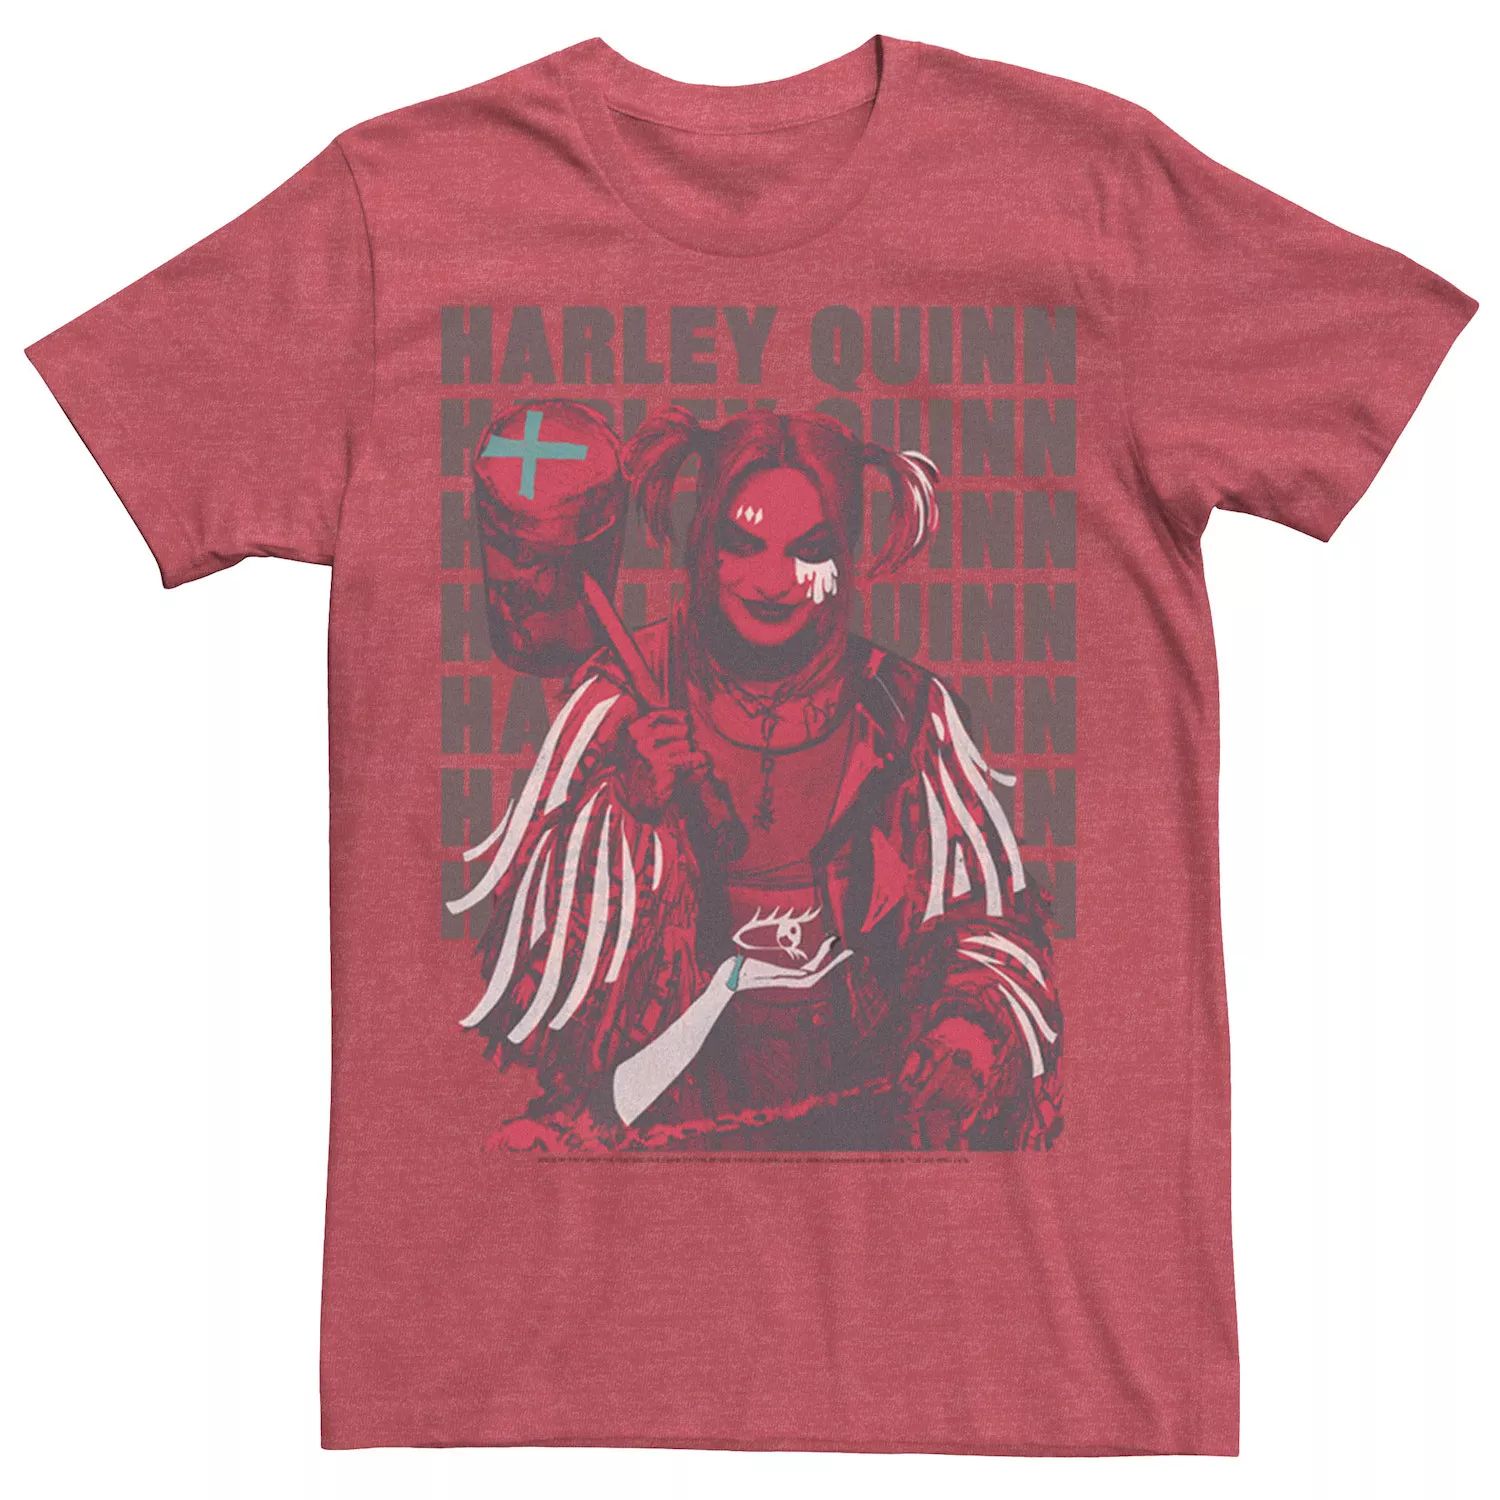 Мужская футболка Harley Quinn: Birds of Prey с надписью Licensed Character фигурка birds of prey harley quinn – harley quinn birds of prey ver nendoroid 10 см